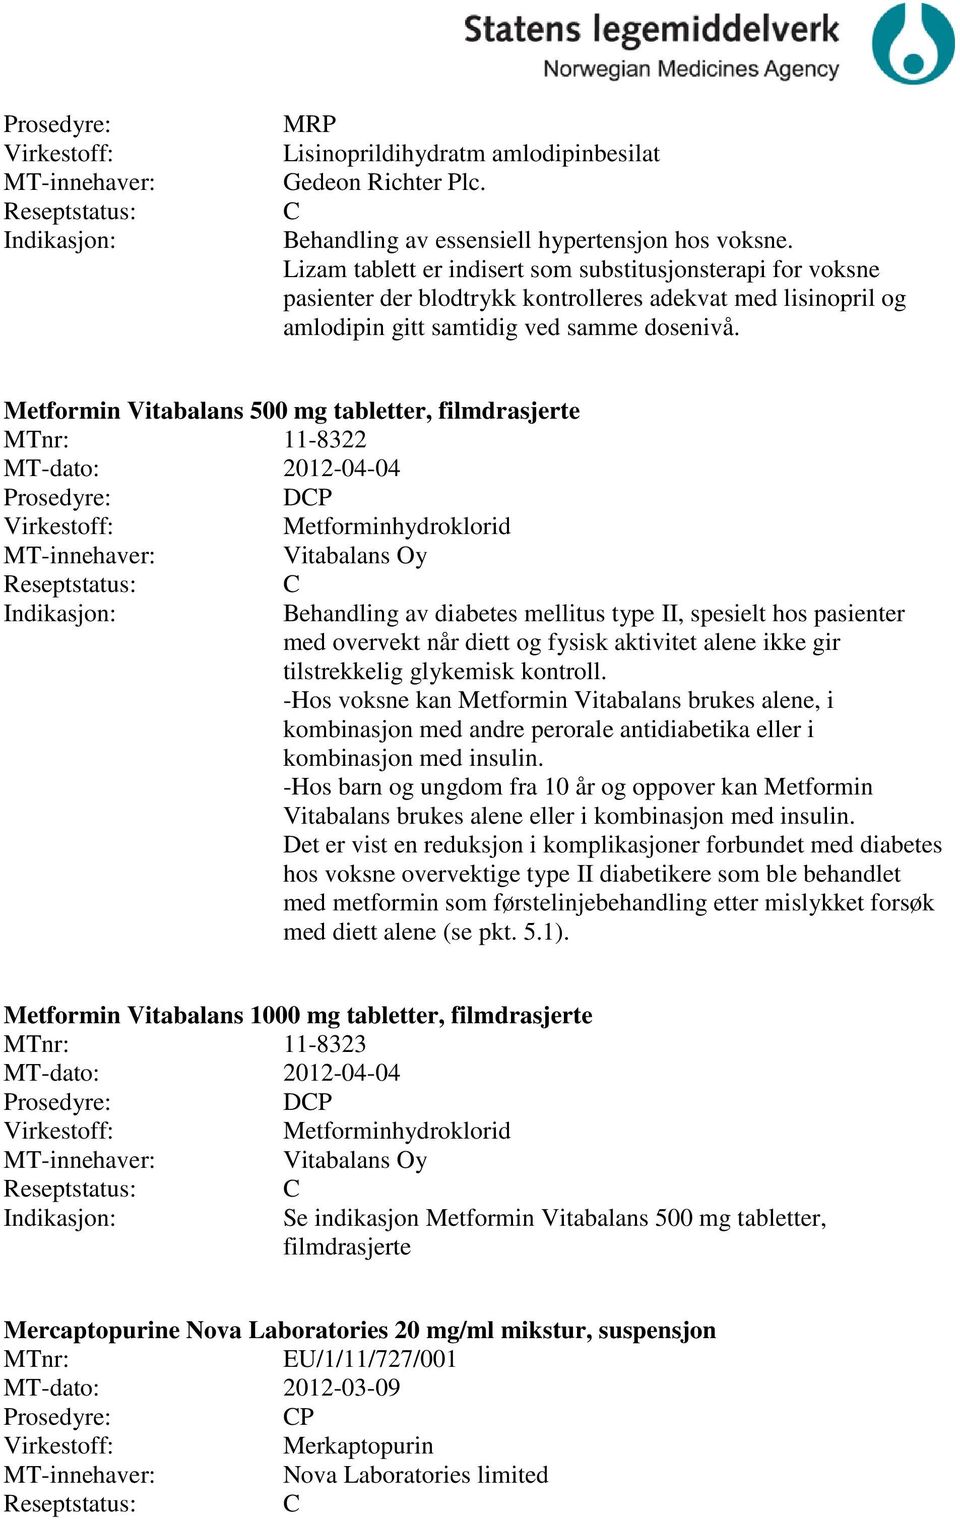 Metformin Vitabalans 500 mg tabletter, filmdrasjerte 11-8322 MT-dato: 2012-04-04 DP Metforminhydroklorid Vitabalans Oy Behandling av diabetes mellitus type II, spesielt hos pasienter med overvekt når